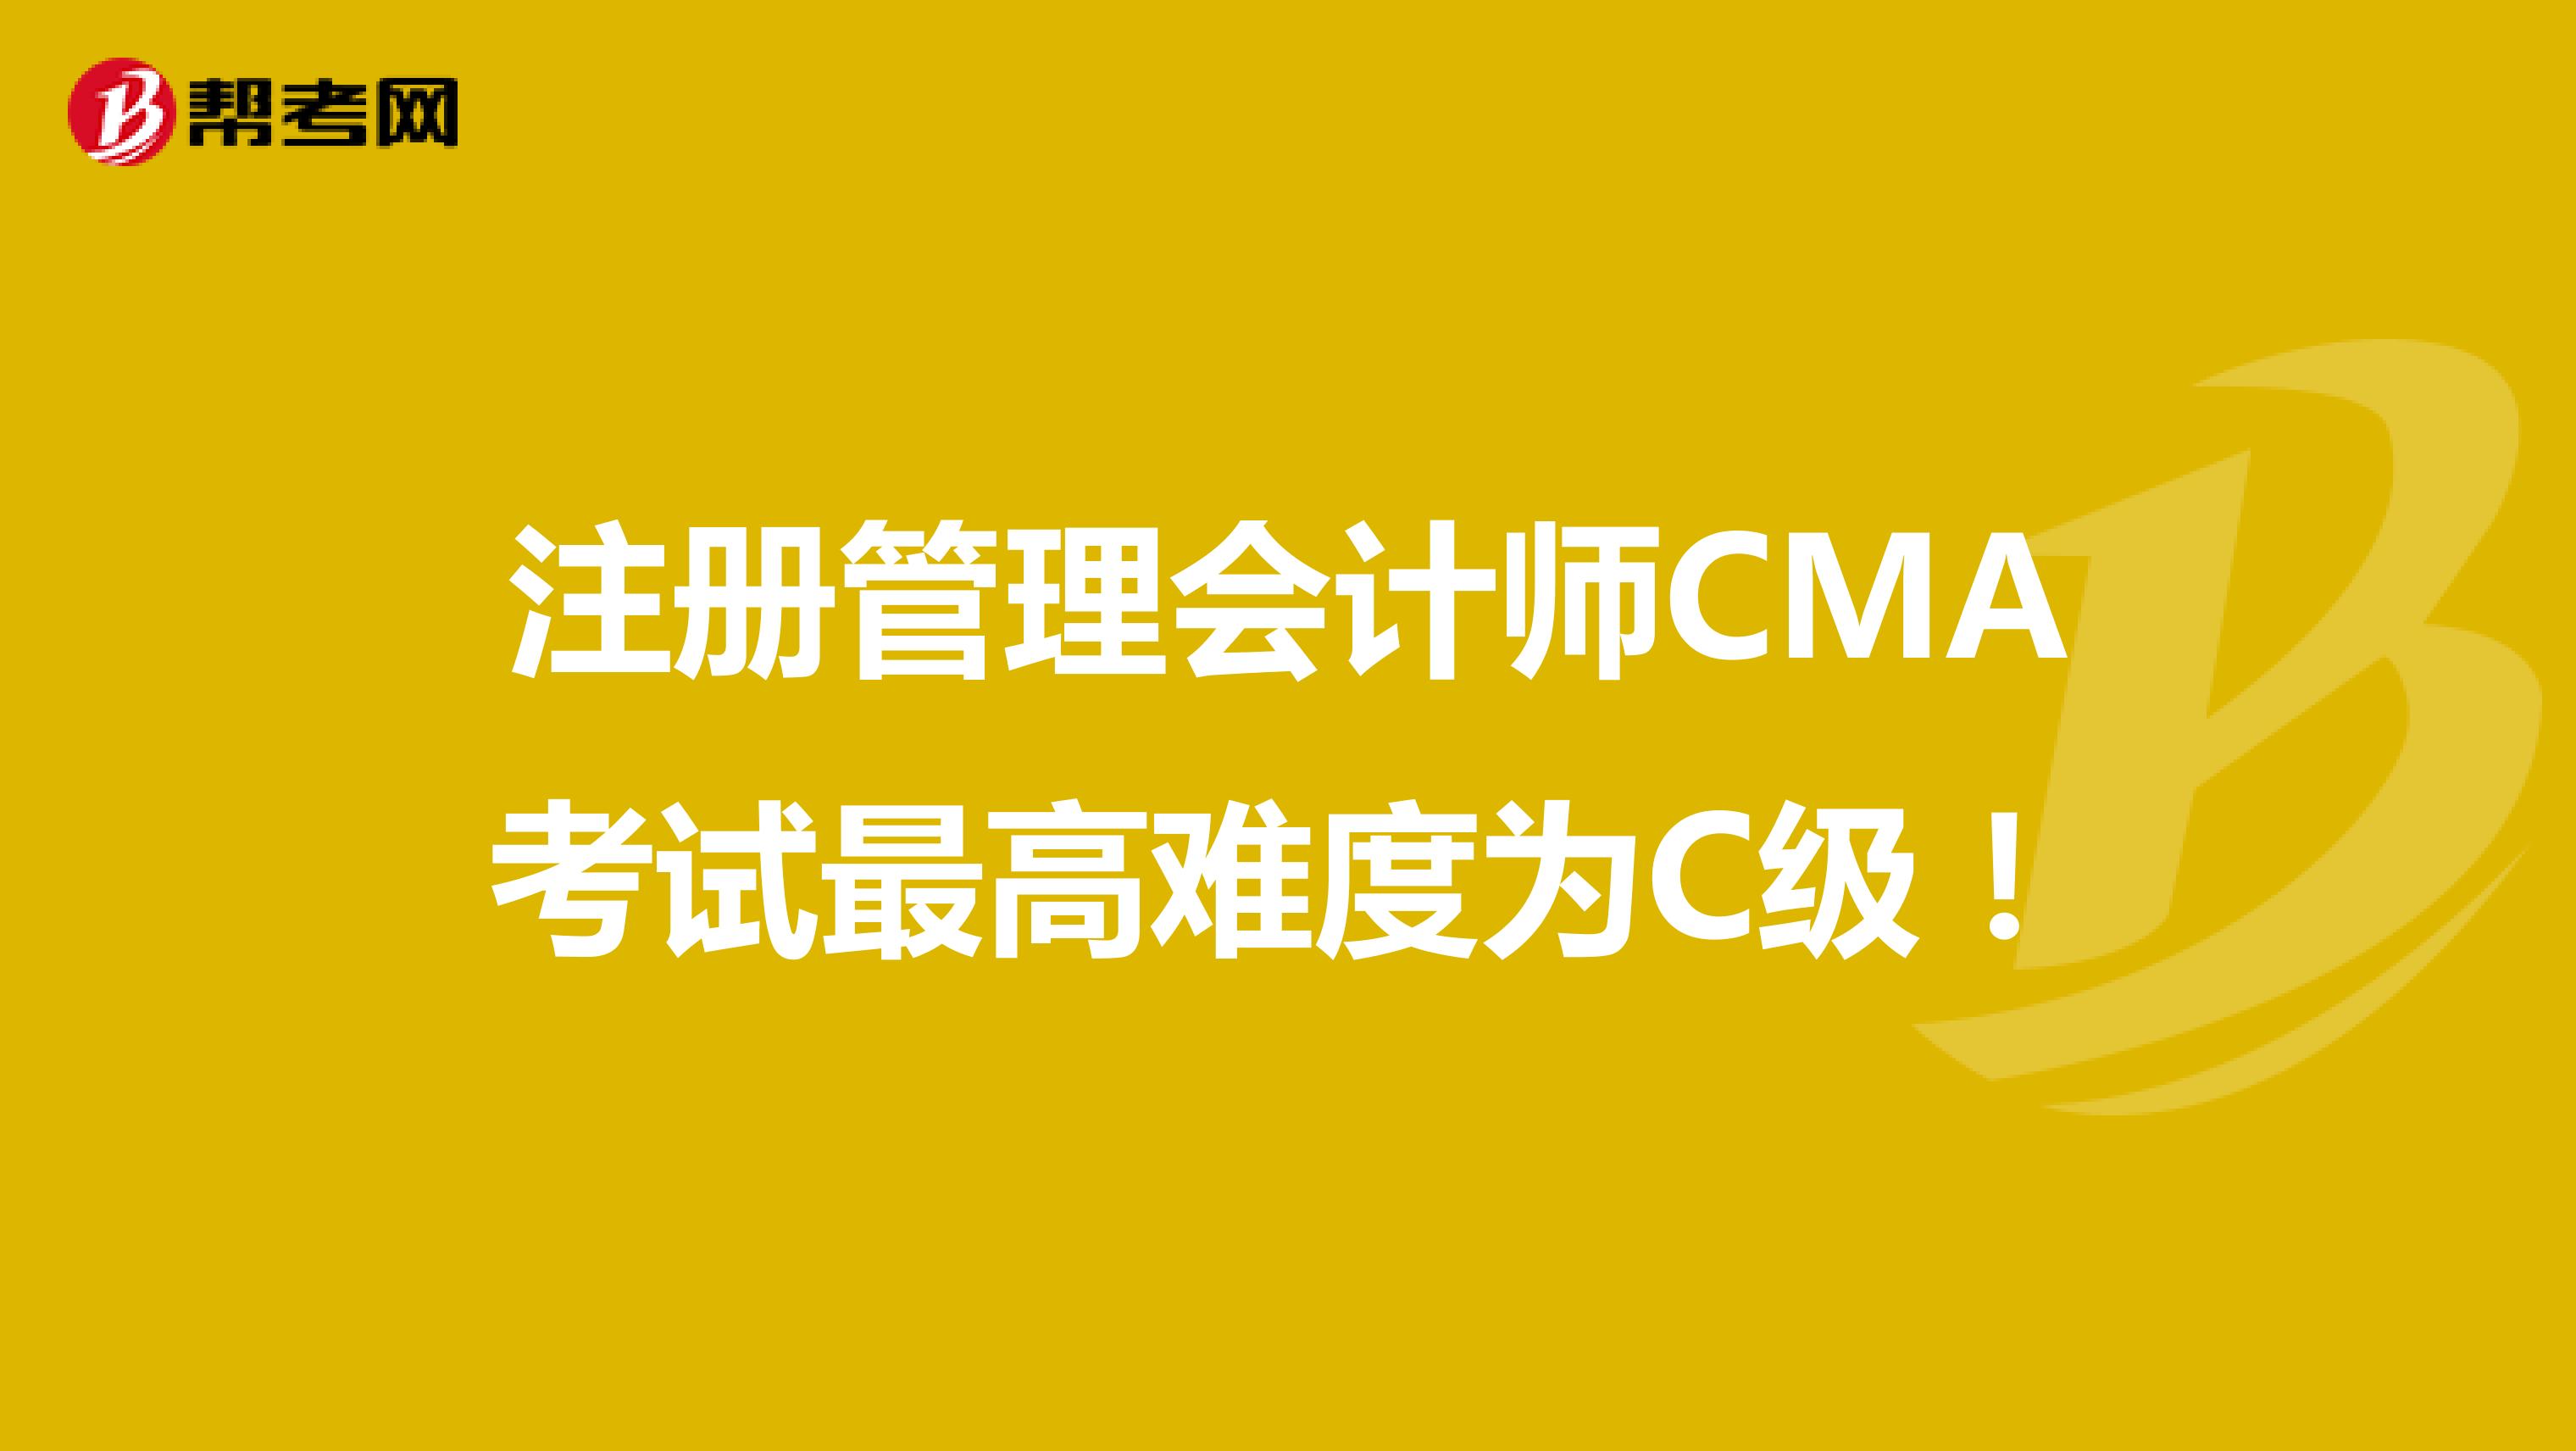 注册管理会计师CMA考试最高难度为C级！